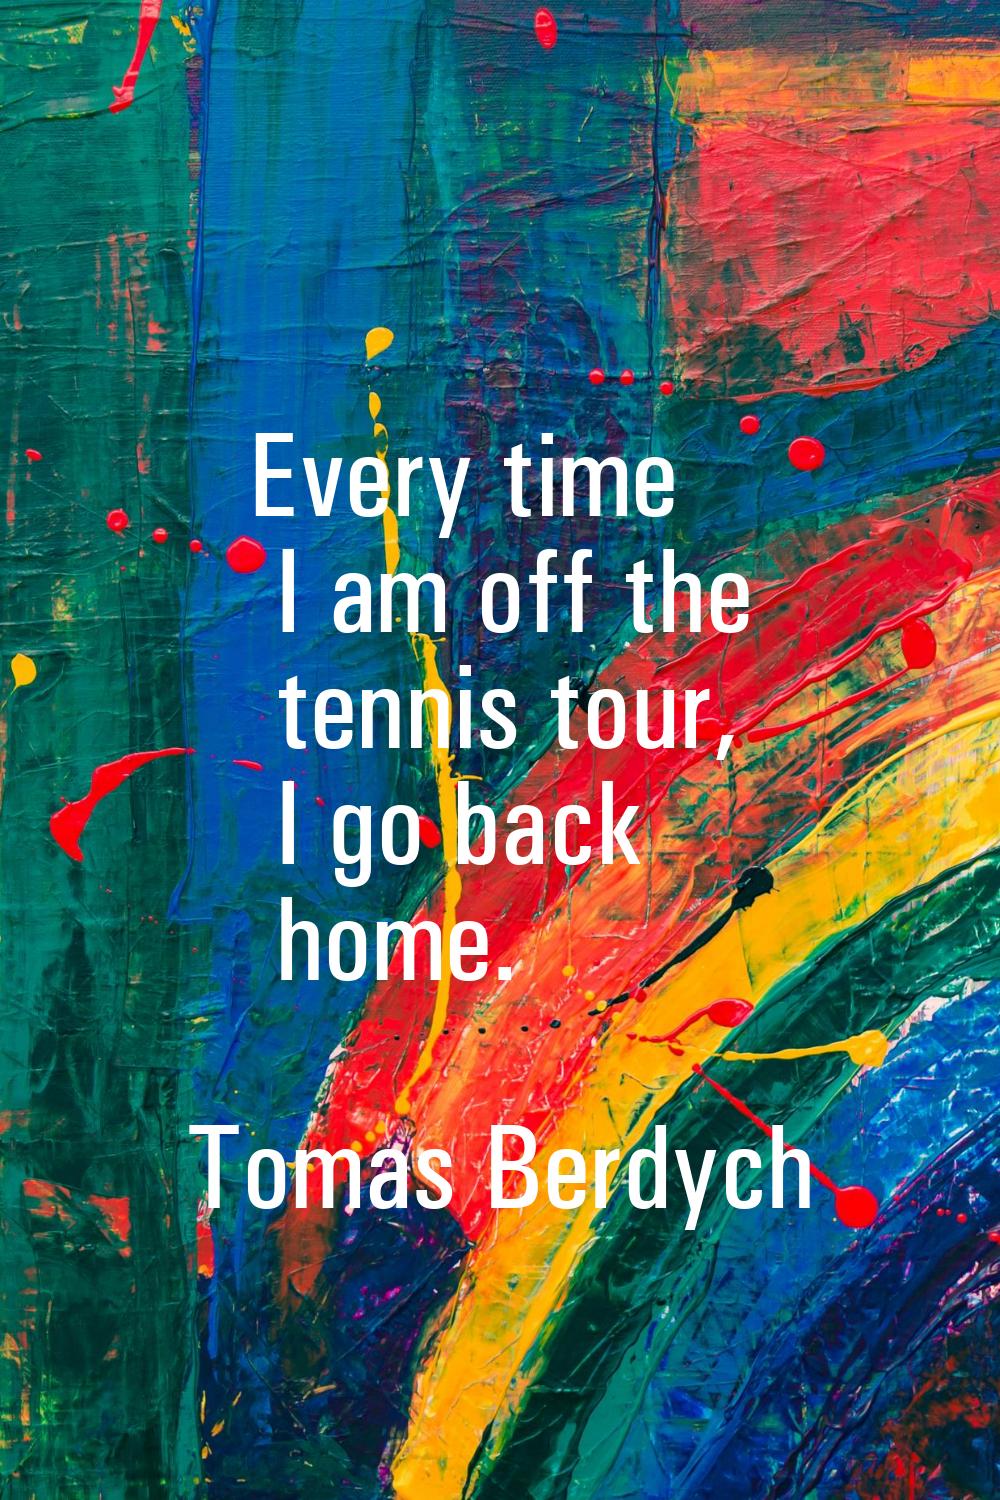 Every time I am off the tennis tour, I go back home.